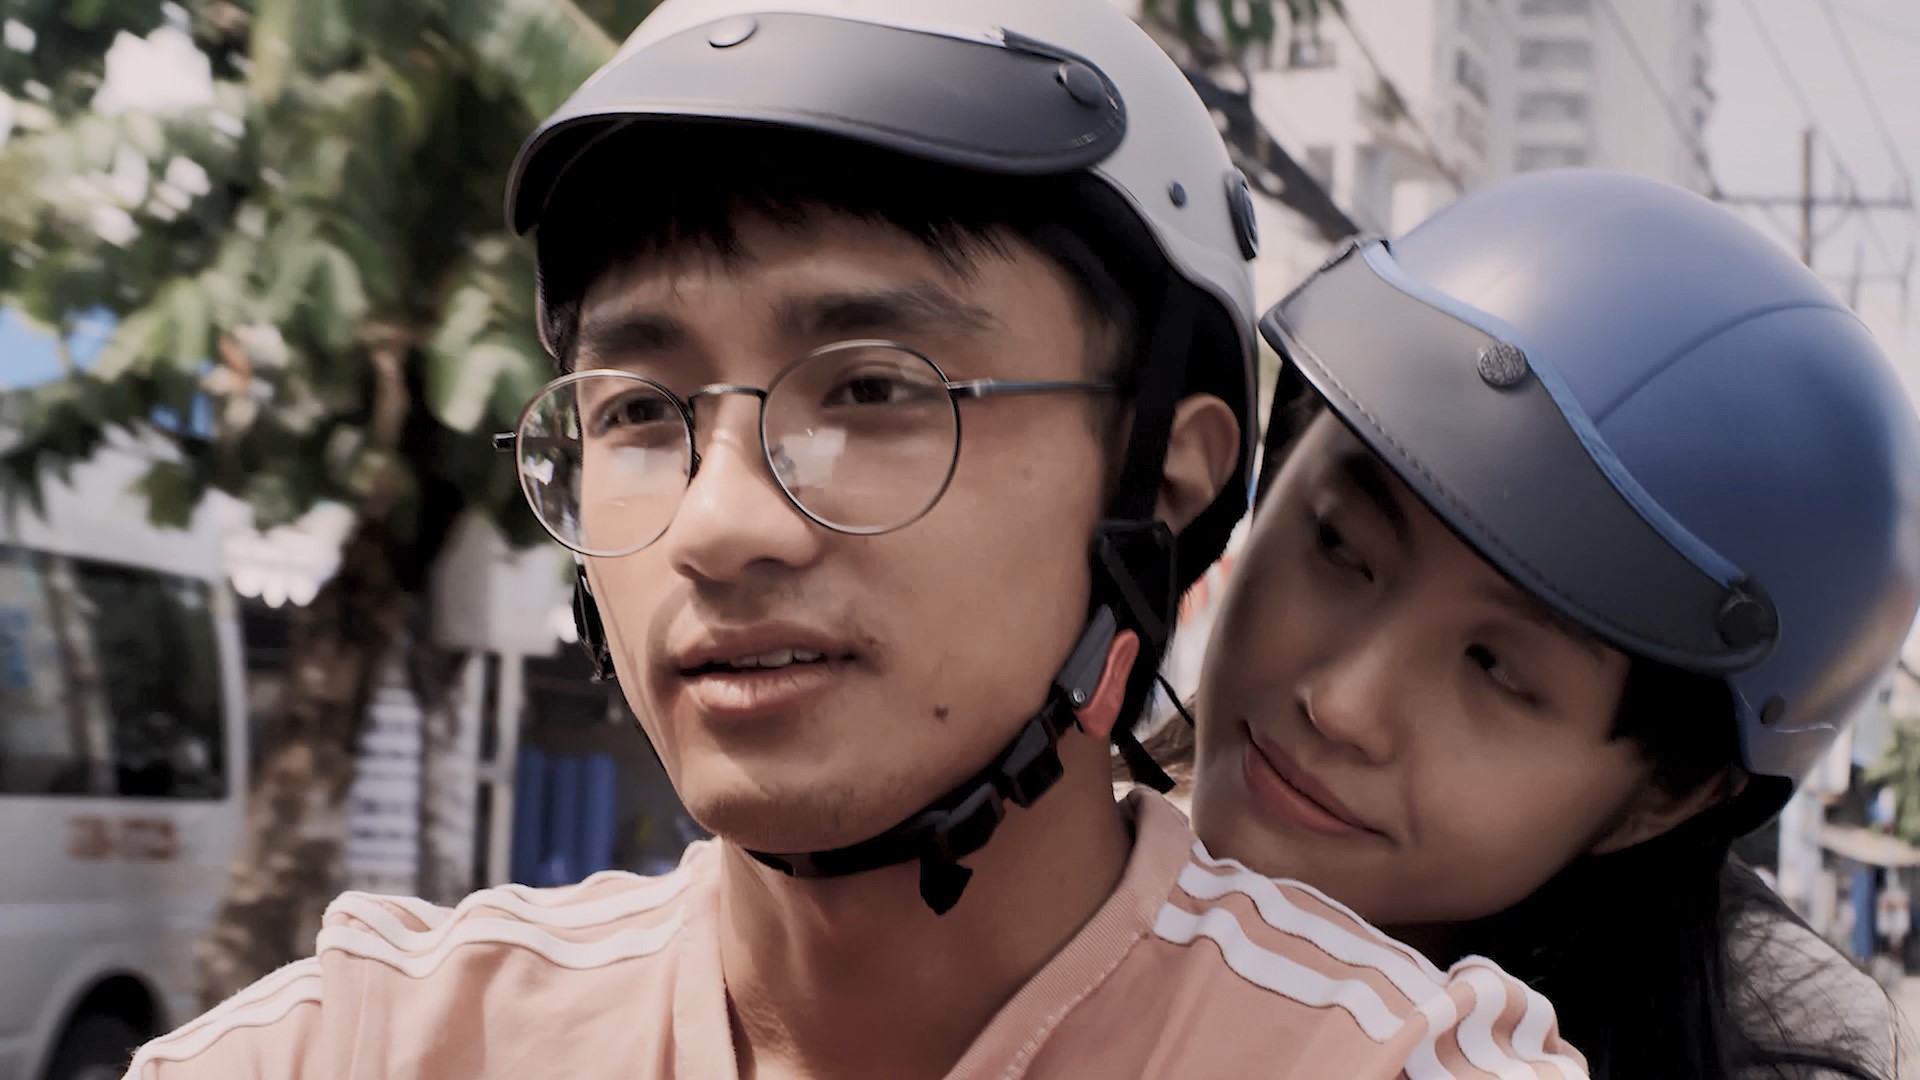 Series trinh thám lấy cảm hứng từ những vụ án có thật tại Việt Nam tung trailer kịch tính - ảnh 2